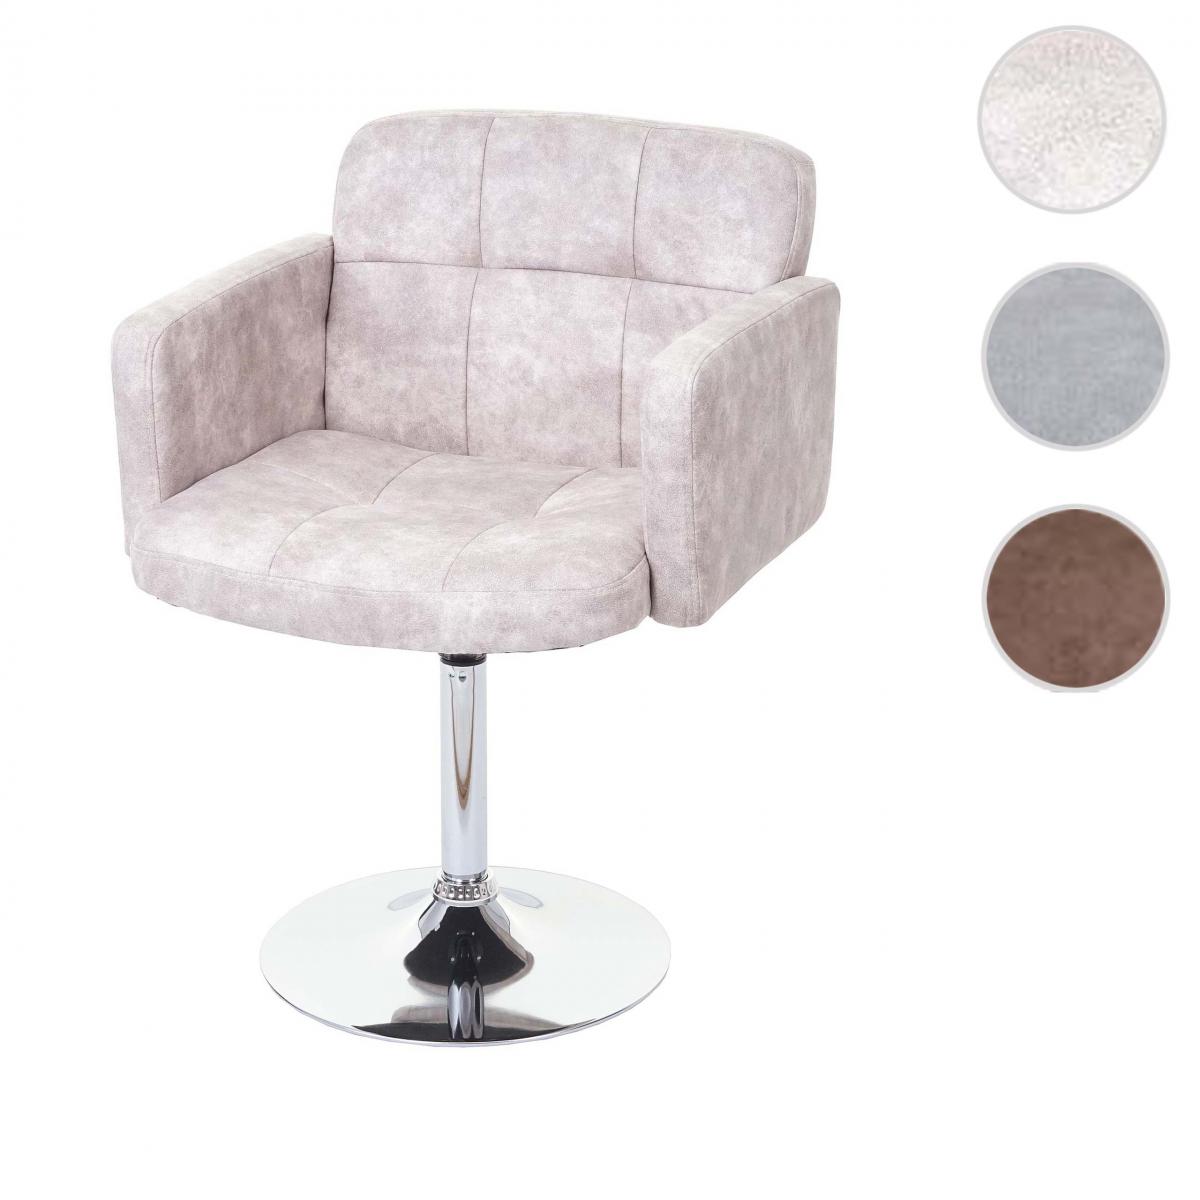 Mendler - Chaise de salle à manger Orlando, fauteuil rotatif, imitation de daim, chrome ~ vintage, gris clair - Chaises